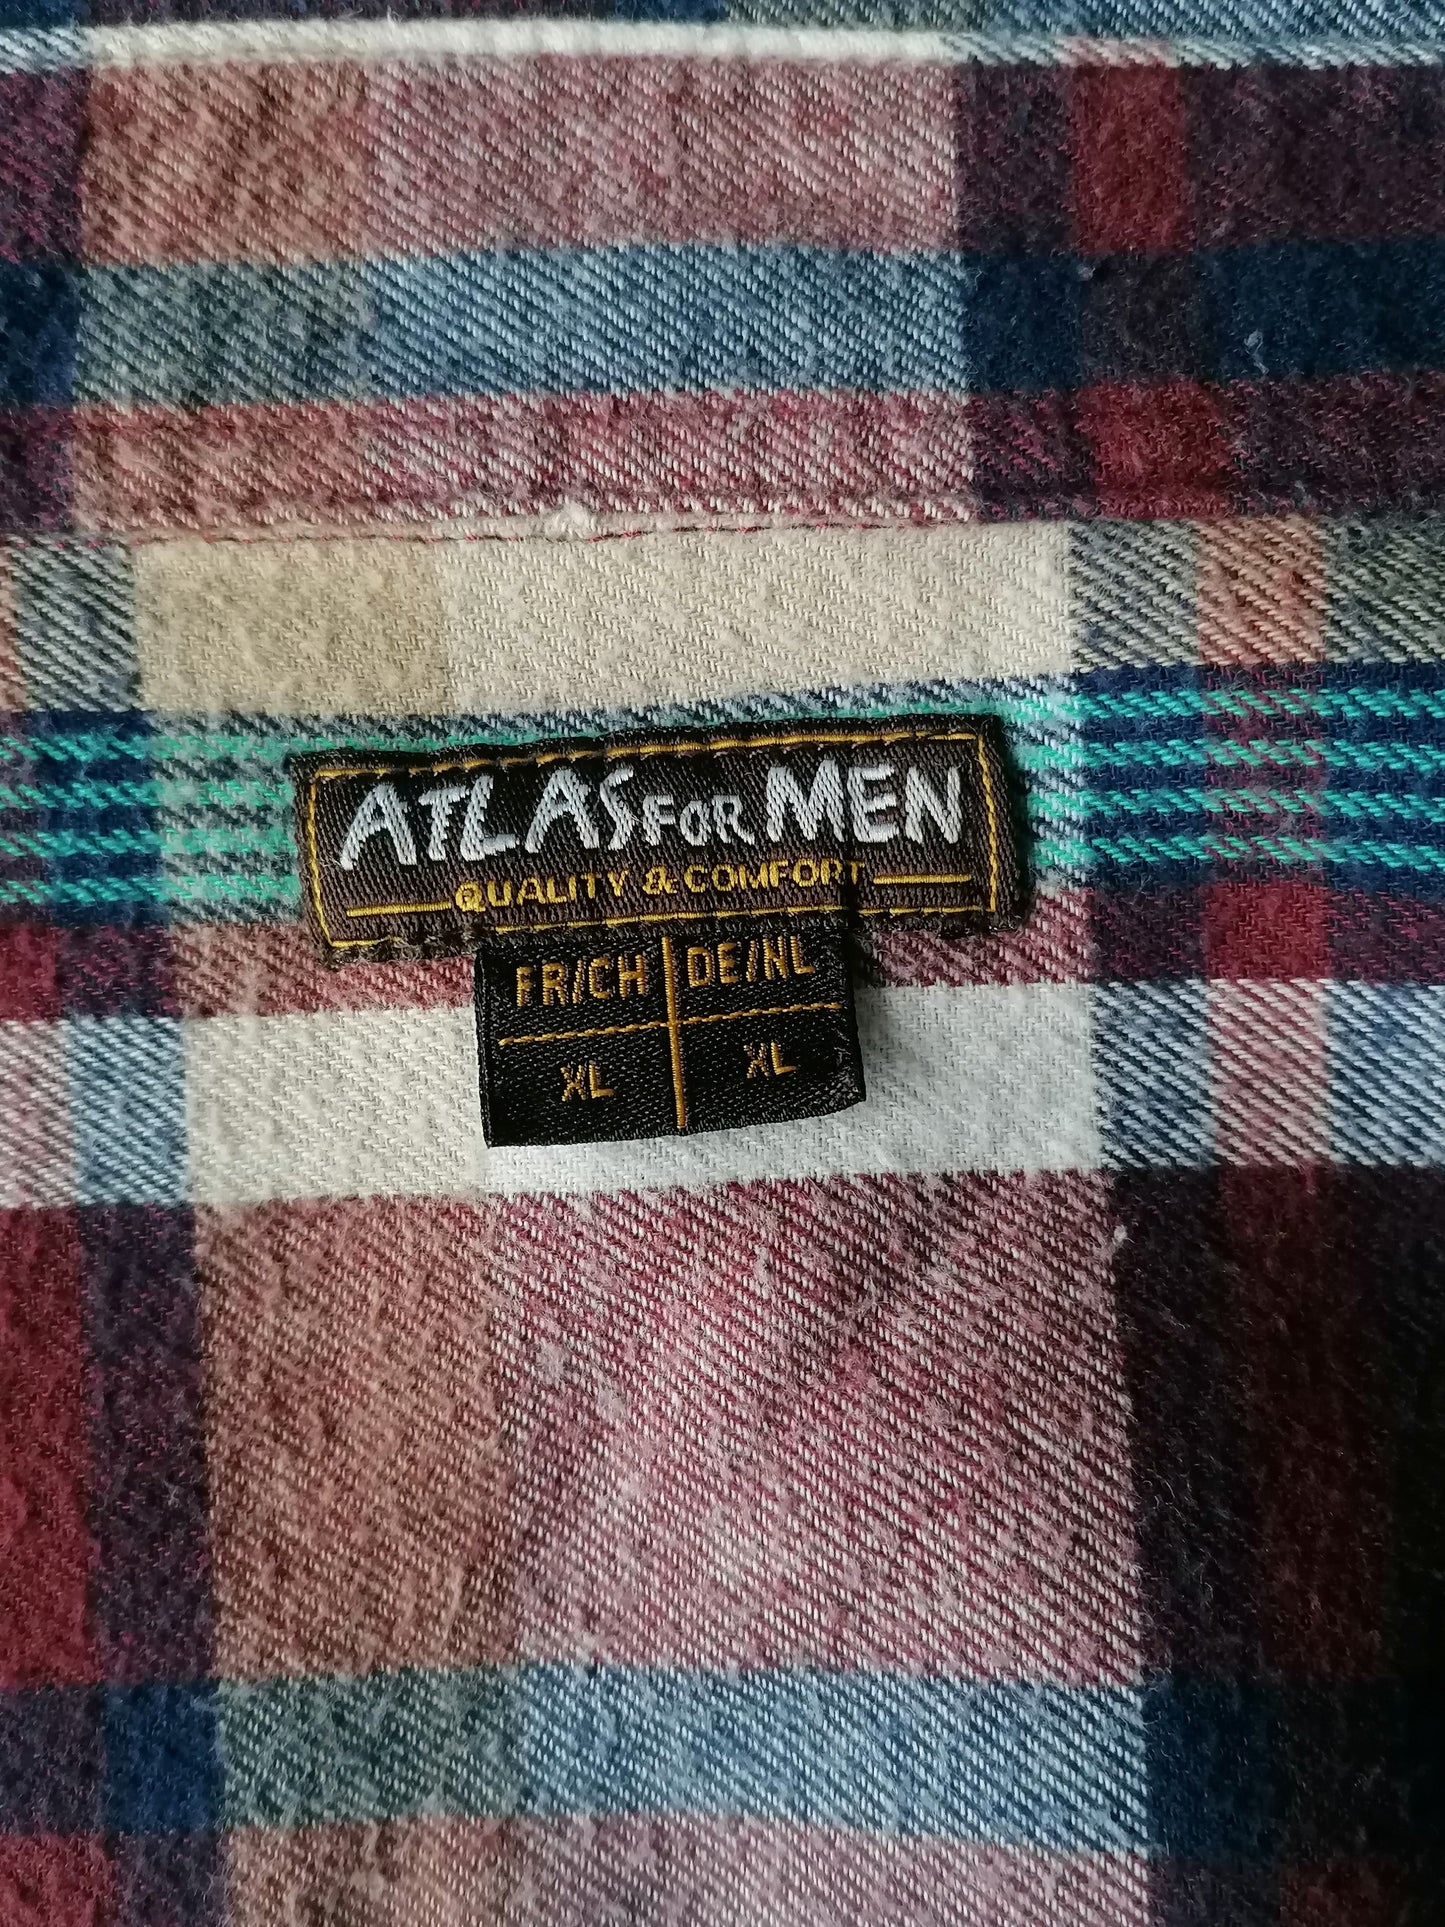 Atlas for Men Flanellen overhemd. Bordeaux Blauw Beige geruit. Maat XL.